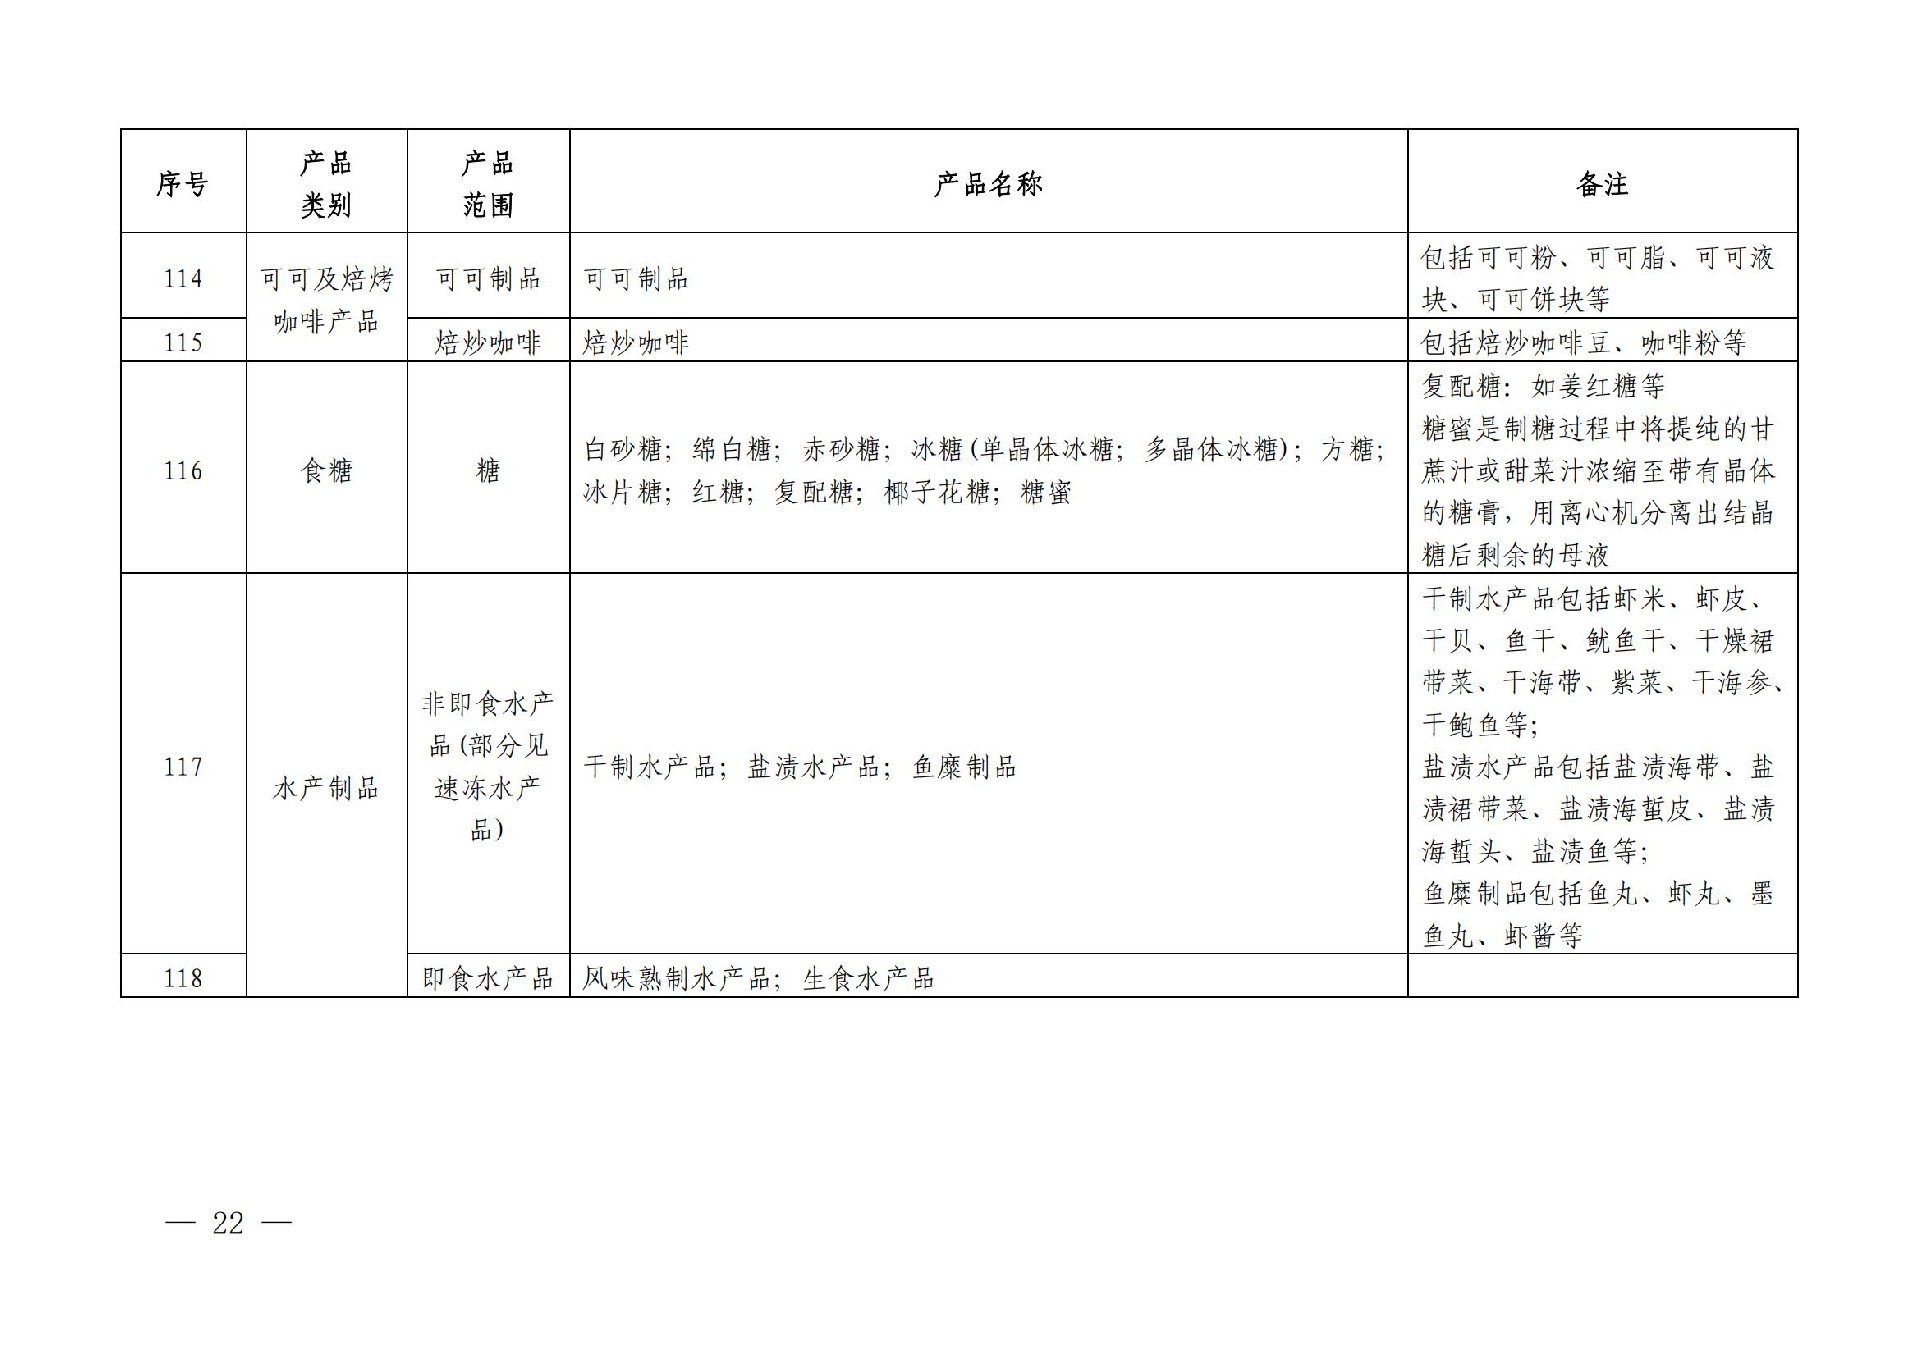 有机产品认证目录【认监委2019年第22号公告】(1)_21.jpg